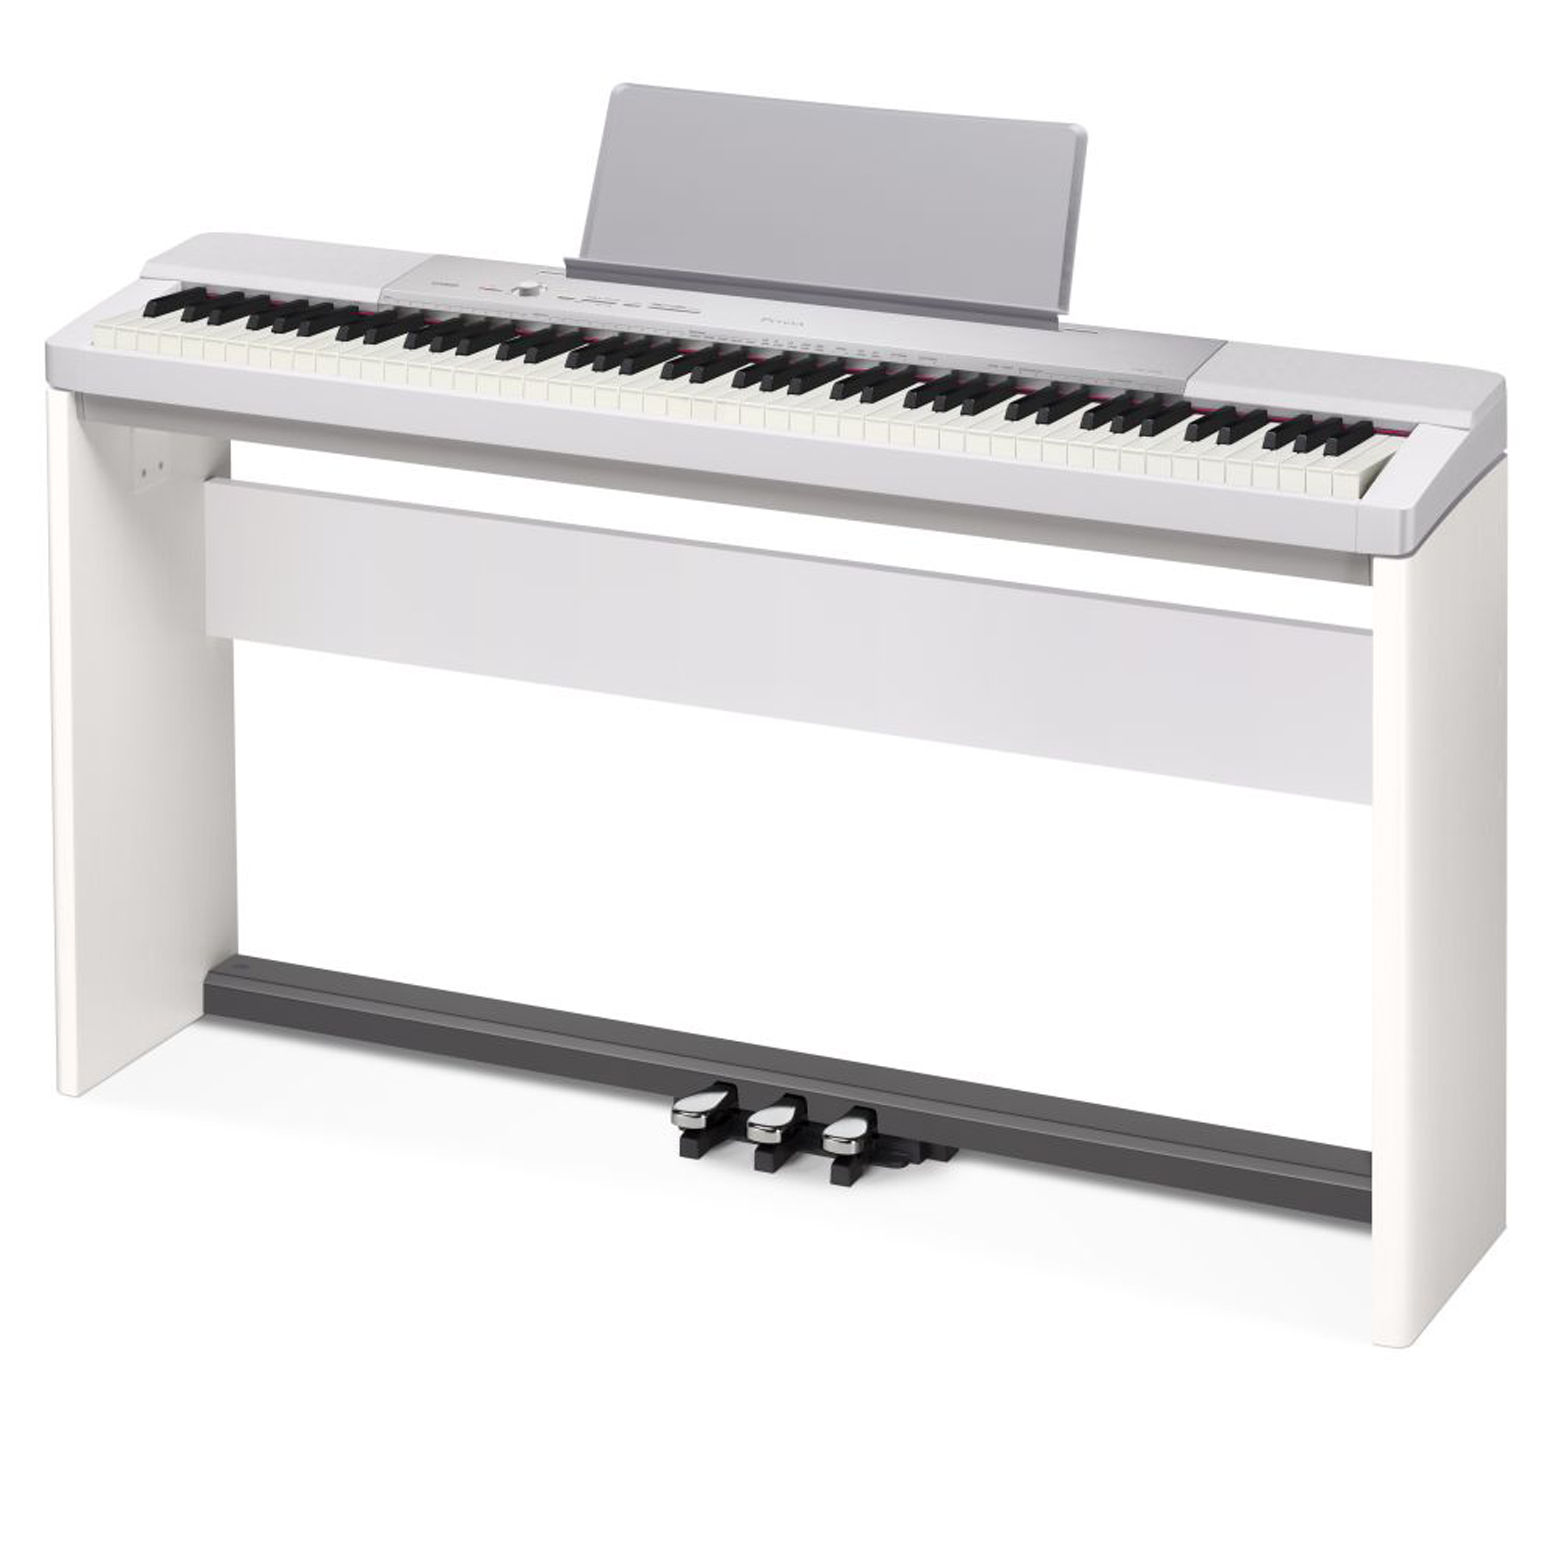 Đàn Piano Casio PX-150 với Nguồn âm thanh Morphing AiR đa chiều, Bàn phím hoạt động cảm biến thế hệ II